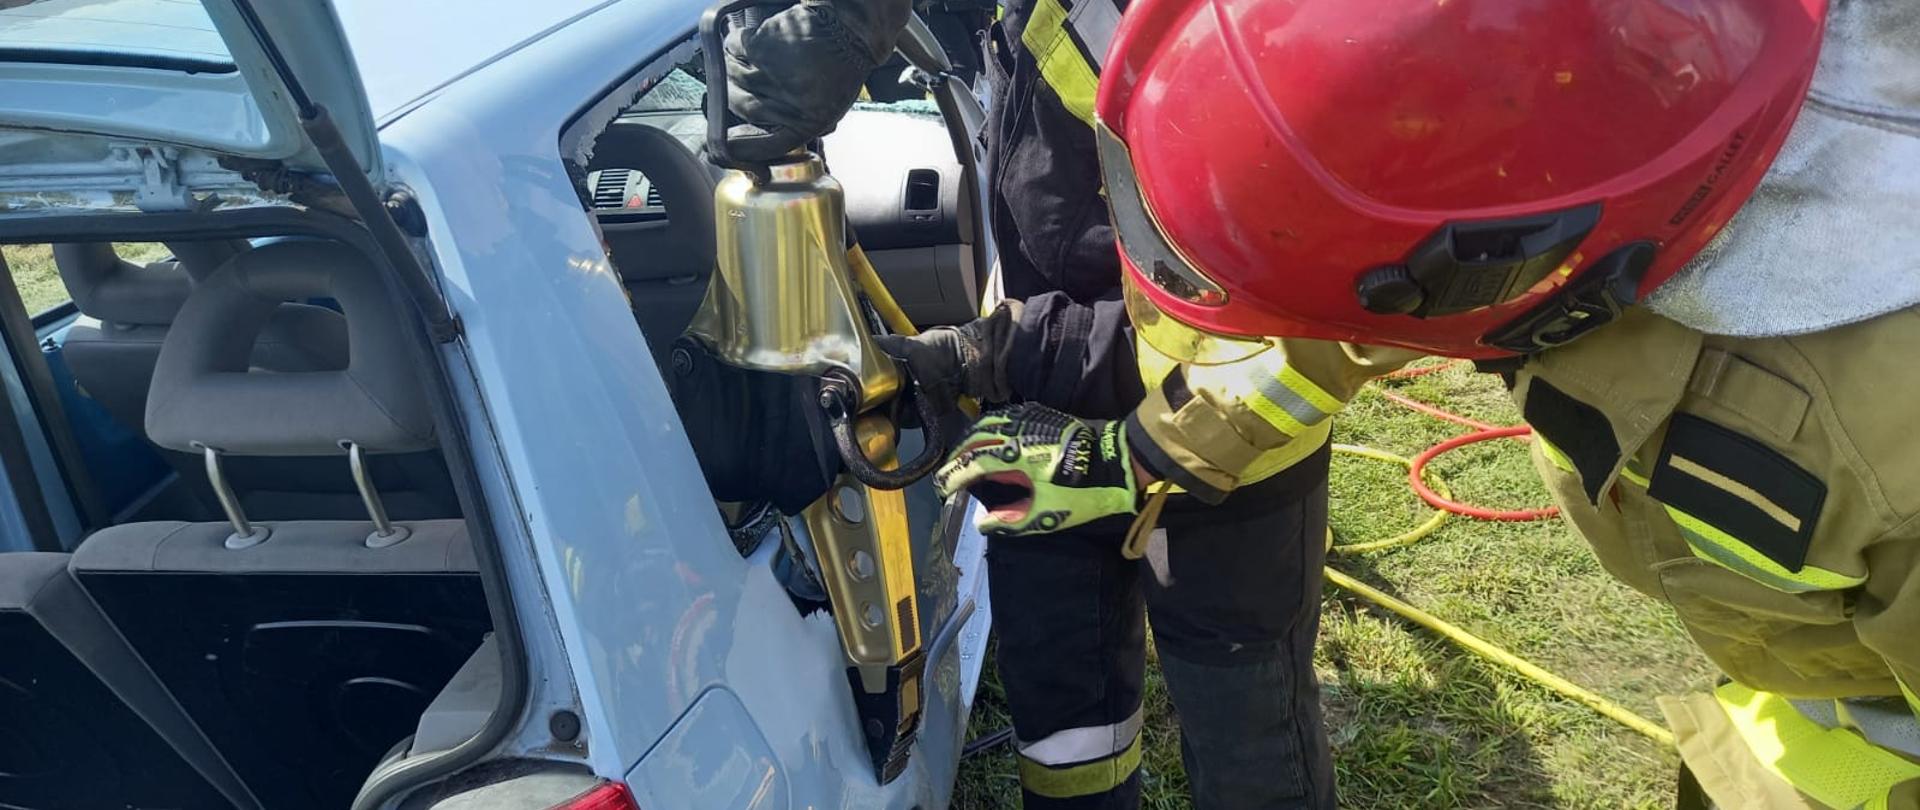 Działania praktyczne z zakresu ratownictwa technicznego, strażacy tną pojazd urządzeniami hydraulicznymi.